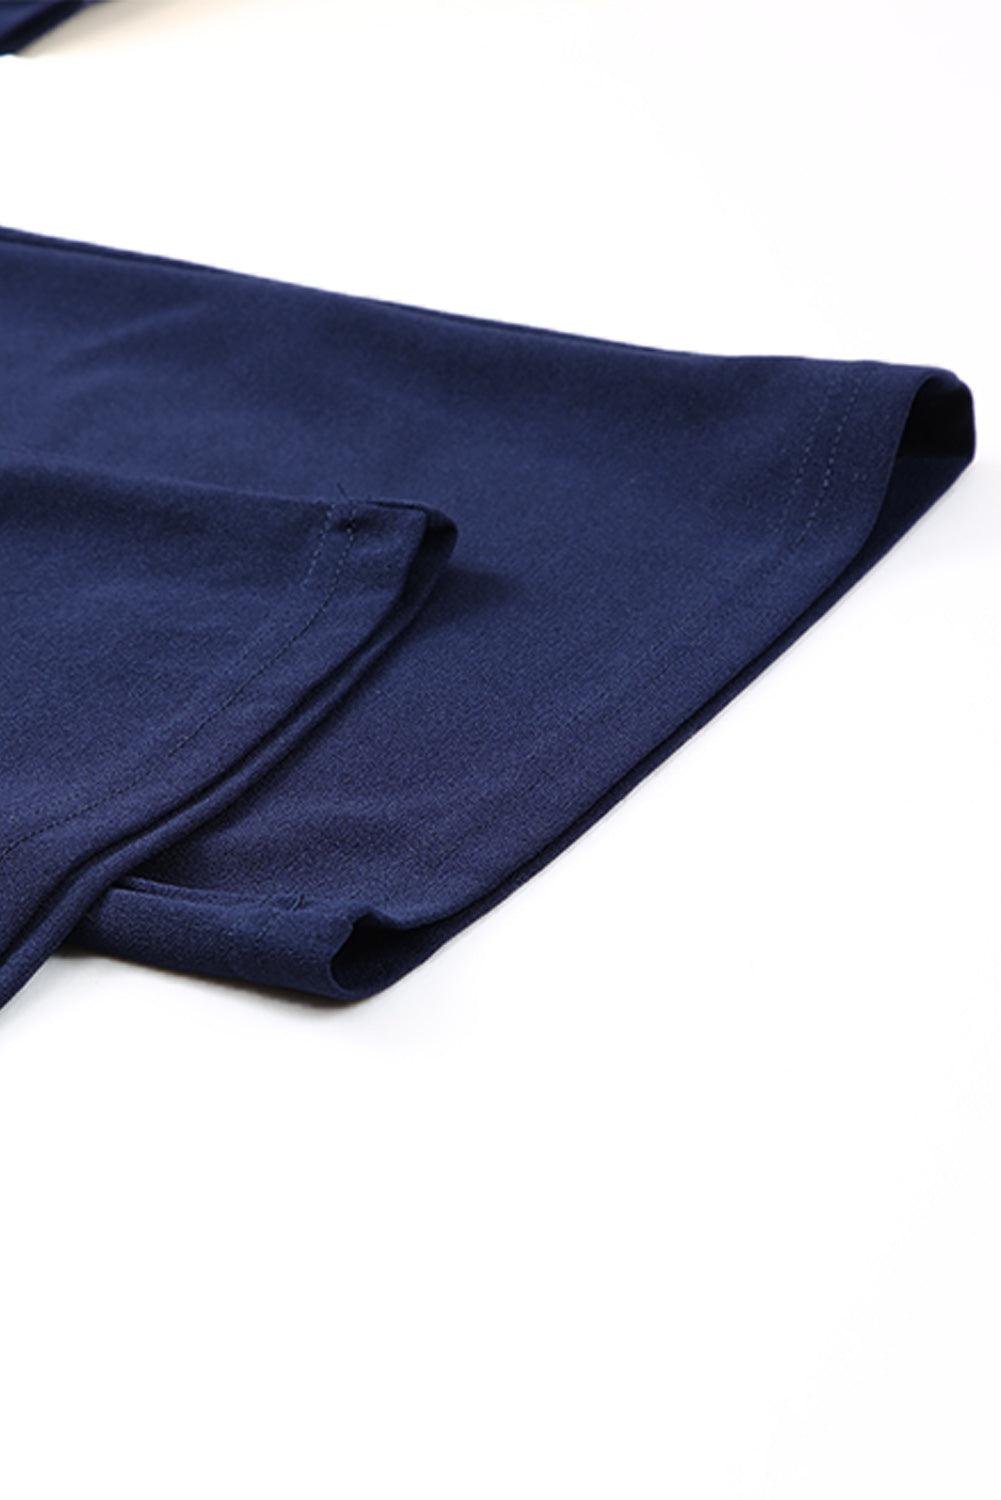 Dark Blue Solid Color Casual Belted Wide Leg Jumpsuit - Vesteeto